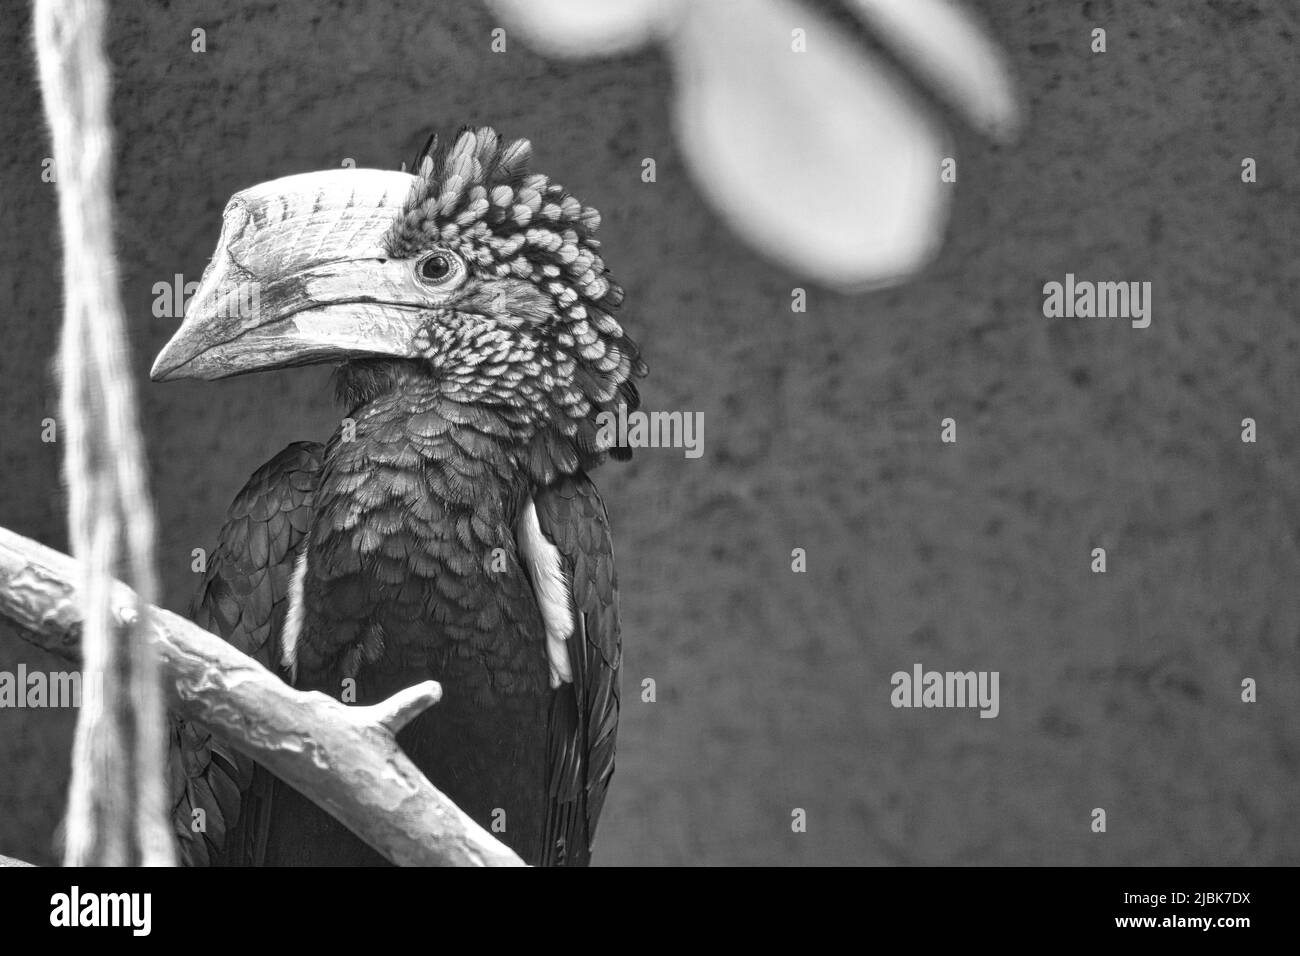 Silberfarbener Hornschnabel, in Schwarz und Weiß, auf einem Ast sitzend. Buntes Gefieder. Großer Schnabel eines australischen Vogels. Tierfoto Stockfoto